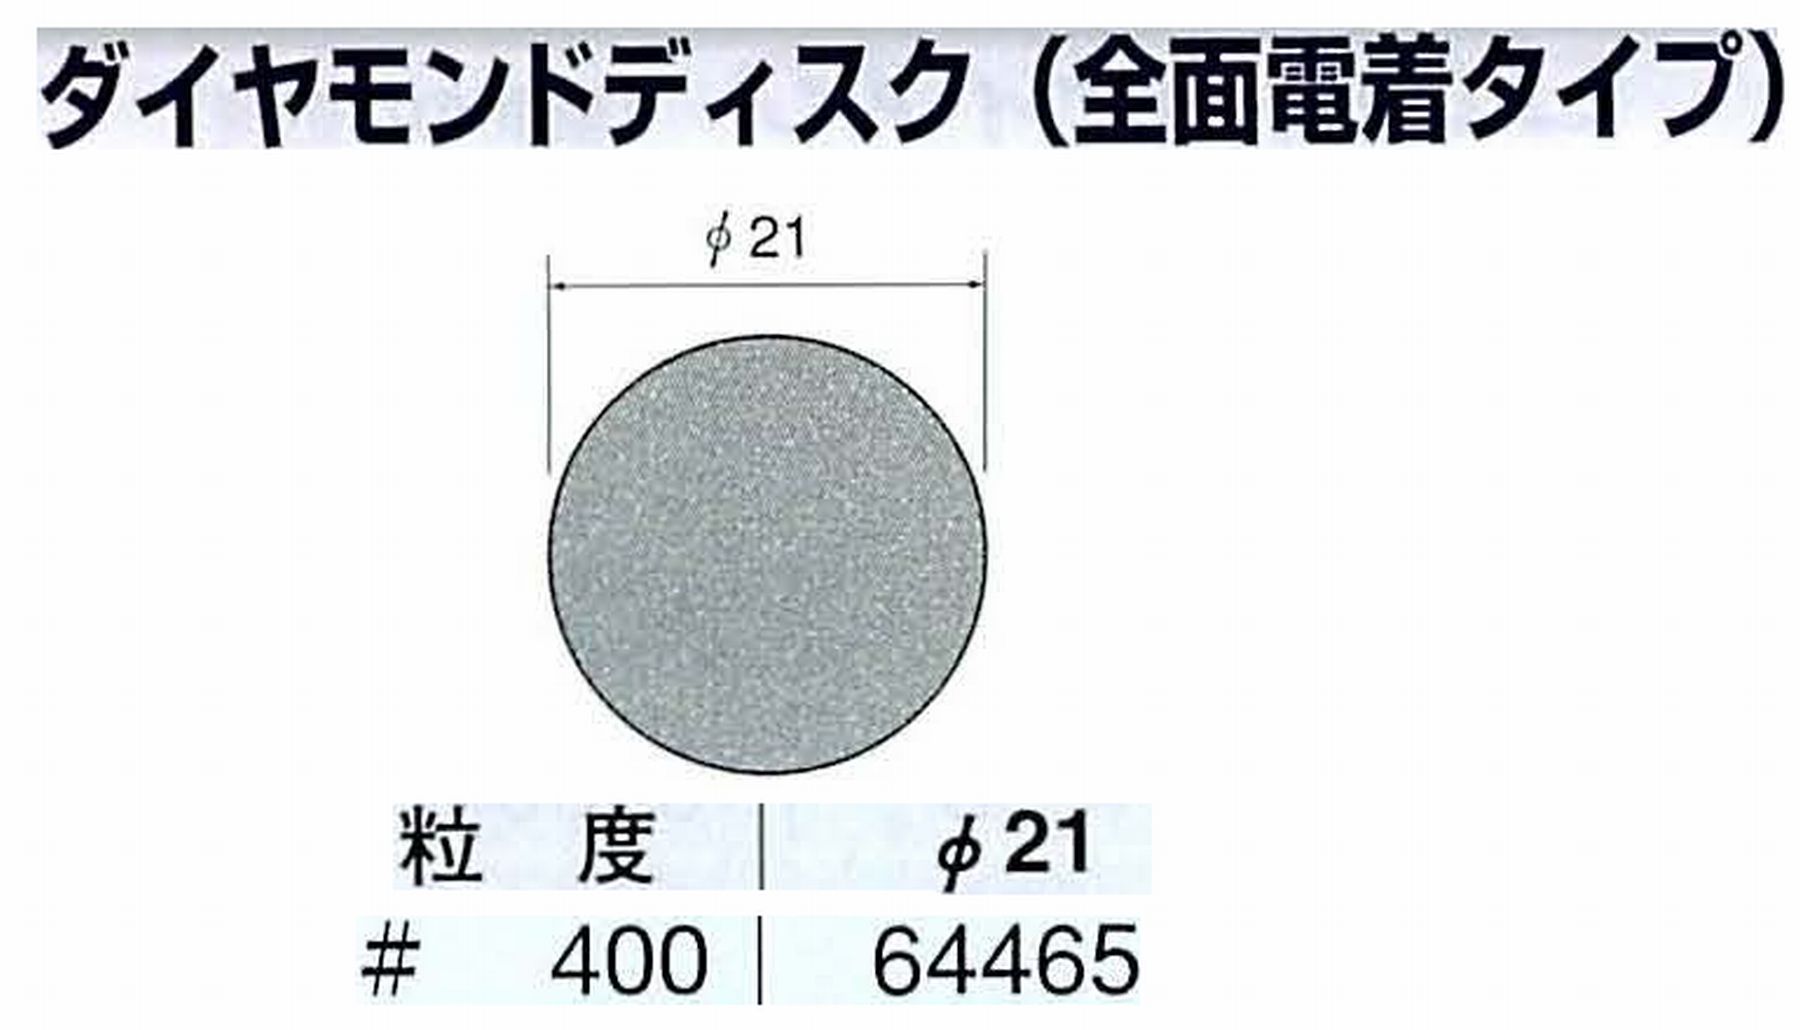 ナカニシ/NAKANISHI アングルグラインダ(電動・エアー) アングルアタッチメント専用工具 ダイヤモンドディスク(全面電着タイプ) 64465